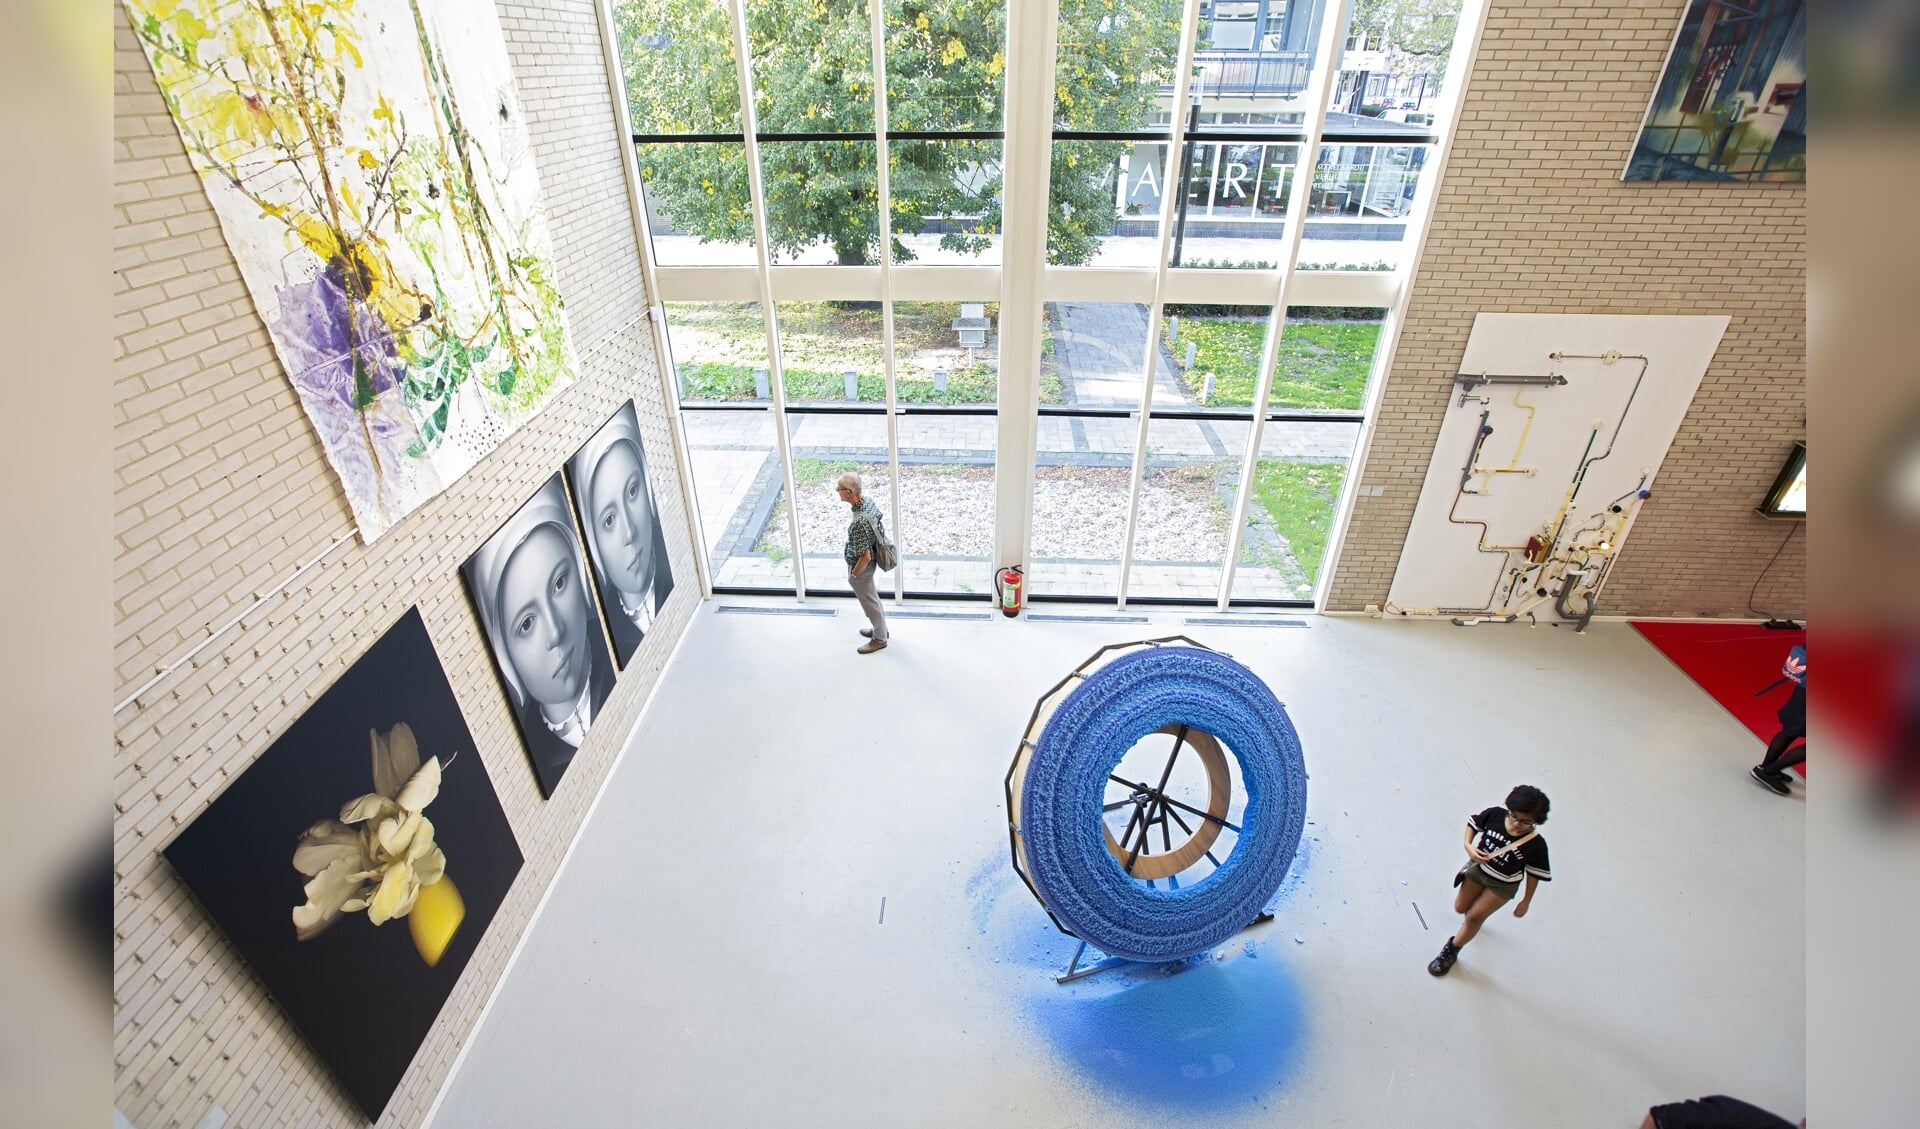 Salon '18 in het Rietveldpaviloen toont een breed spectrum aan kunstwerken.